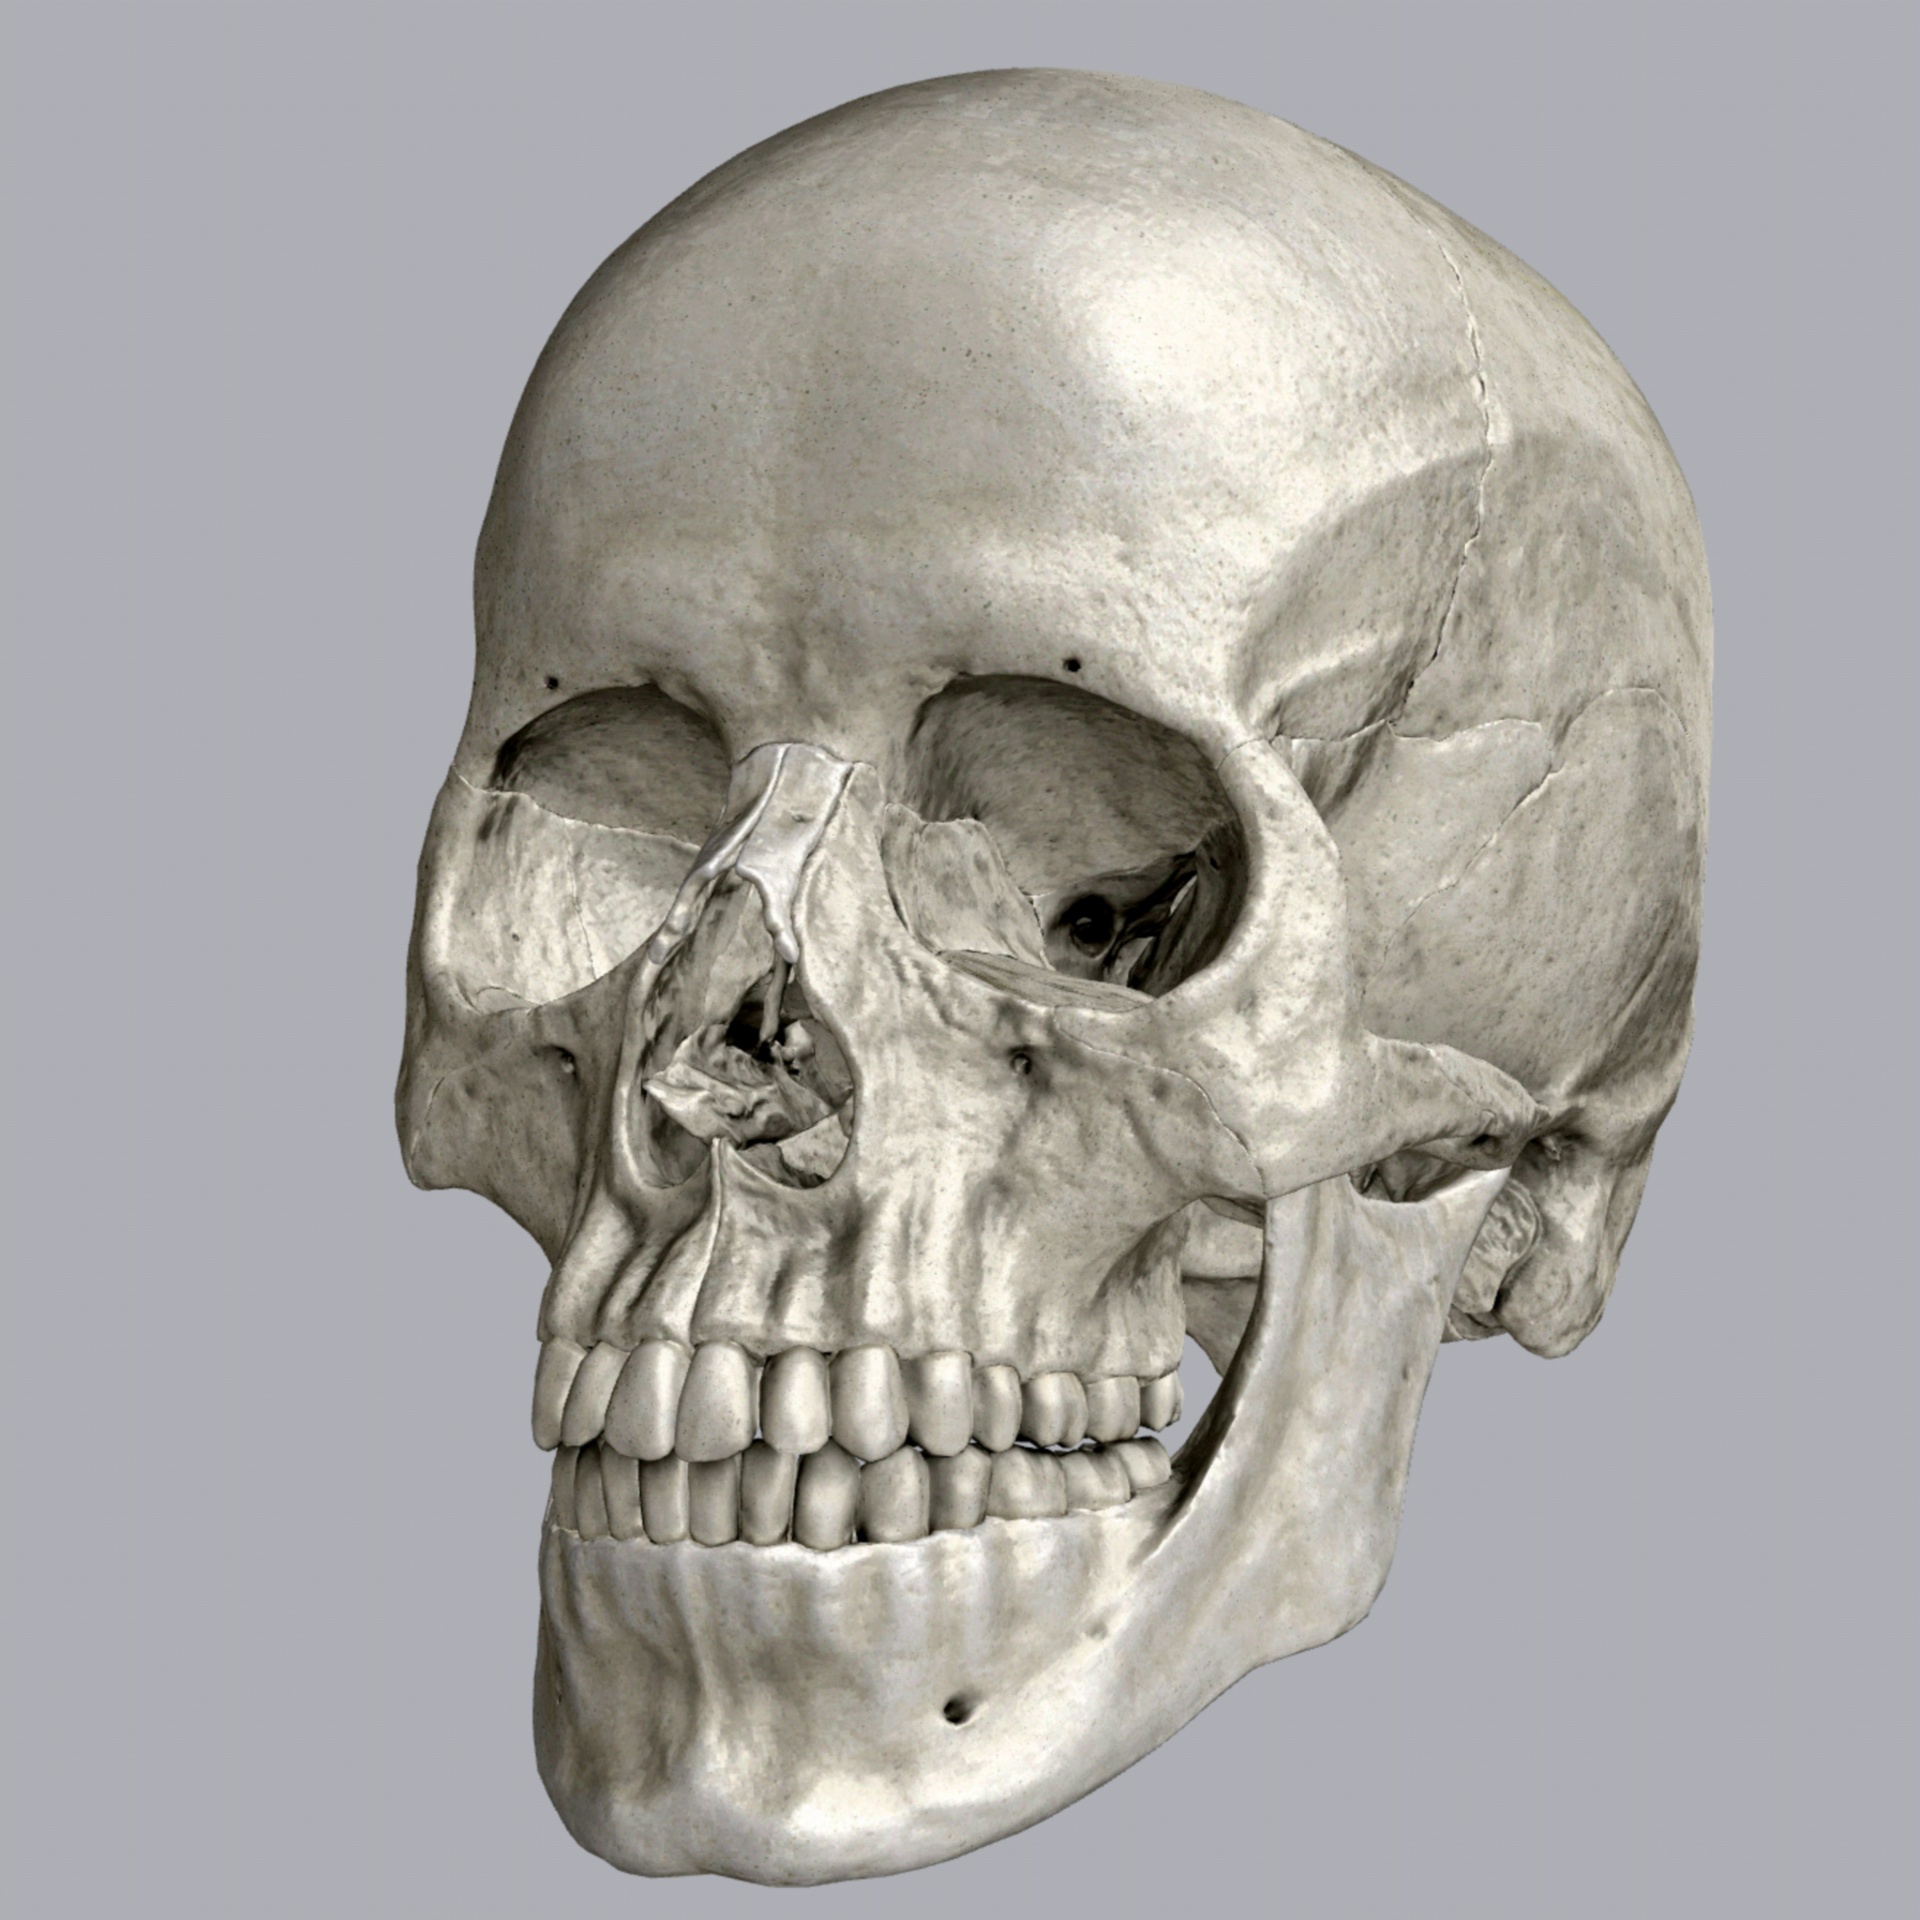 human skull 3d free photo